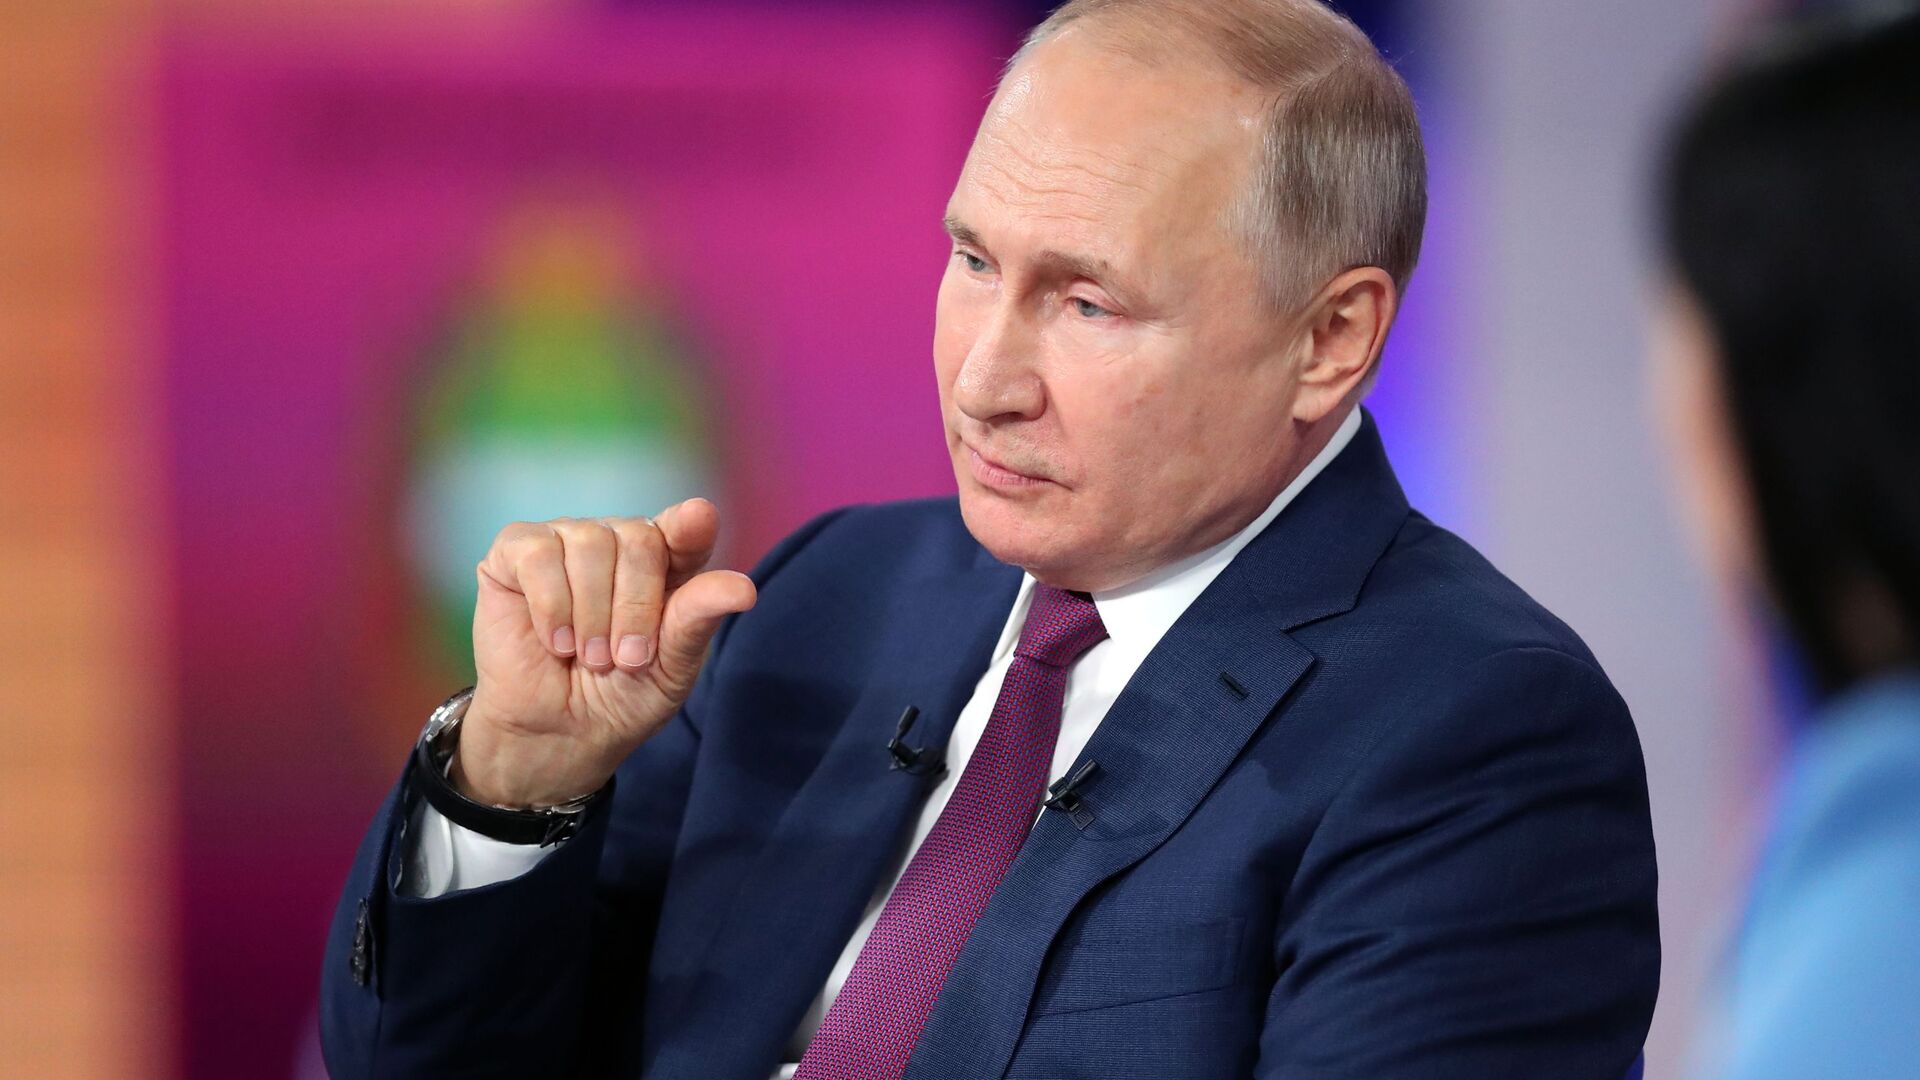 Rusiya prezidenti Vladimir Putin, 30 iyun 2021-ci il - Sputnik Азербайджан, 1920, 30.06.2021